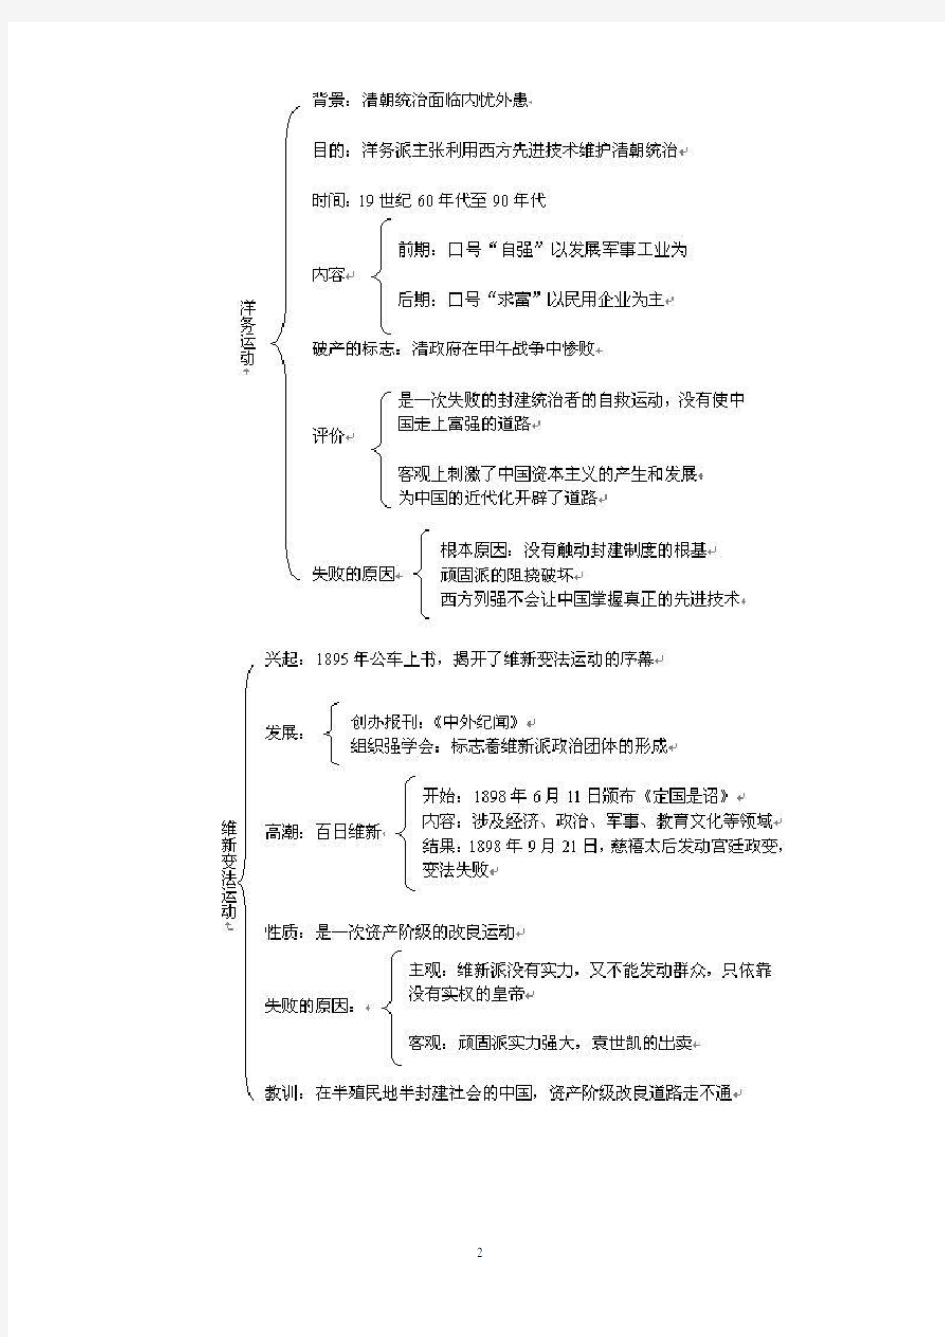 详细的中国史世界史知识结构图